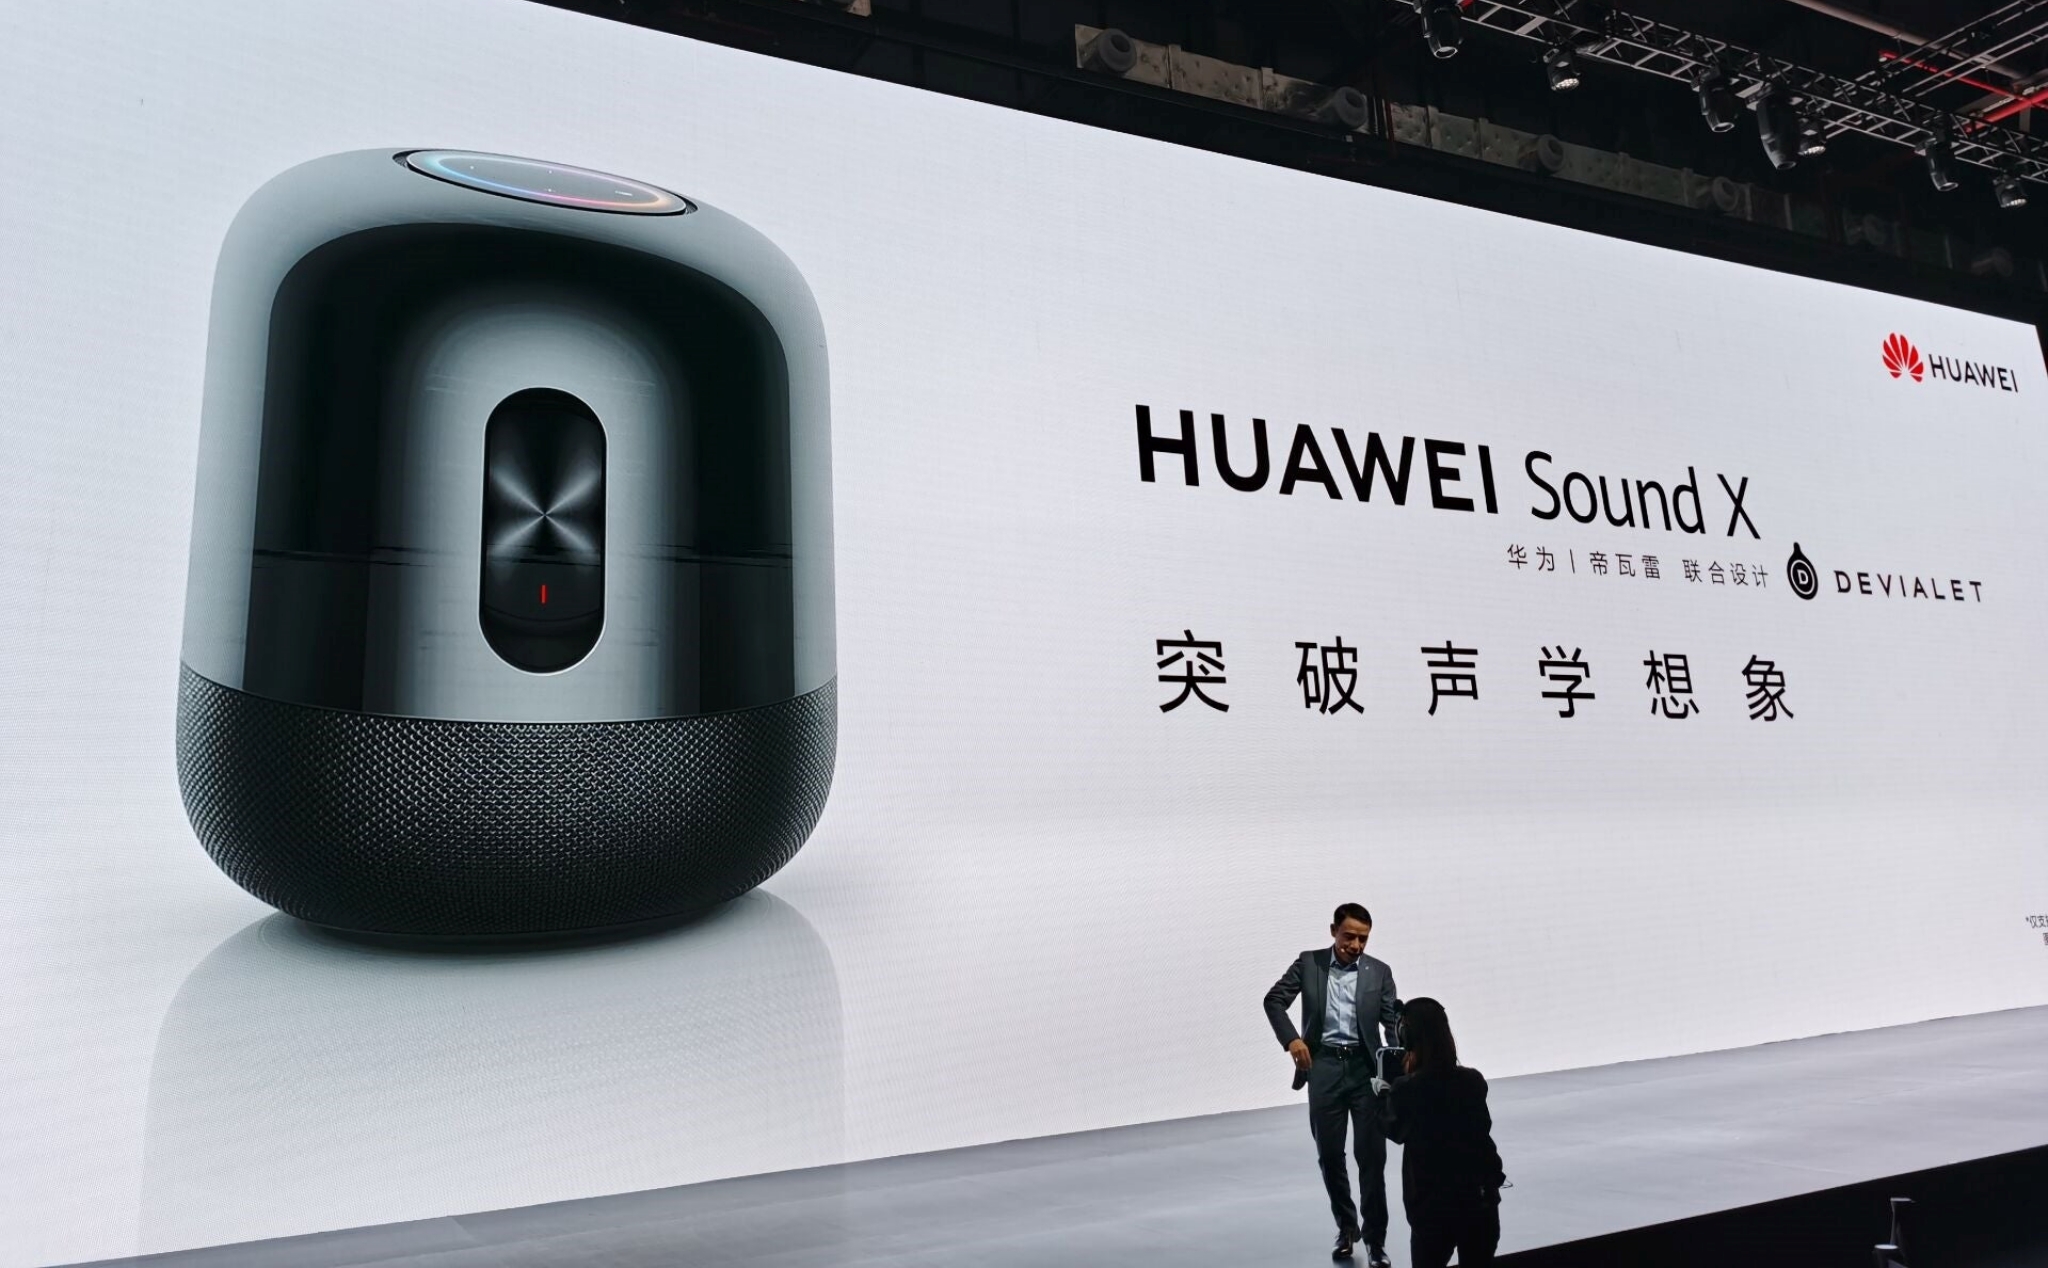 Huawei Sound X - Loa thông minh Hi-Res Audio đầu tiên, Devialet thiết kế, âm thanh Surround 5.1